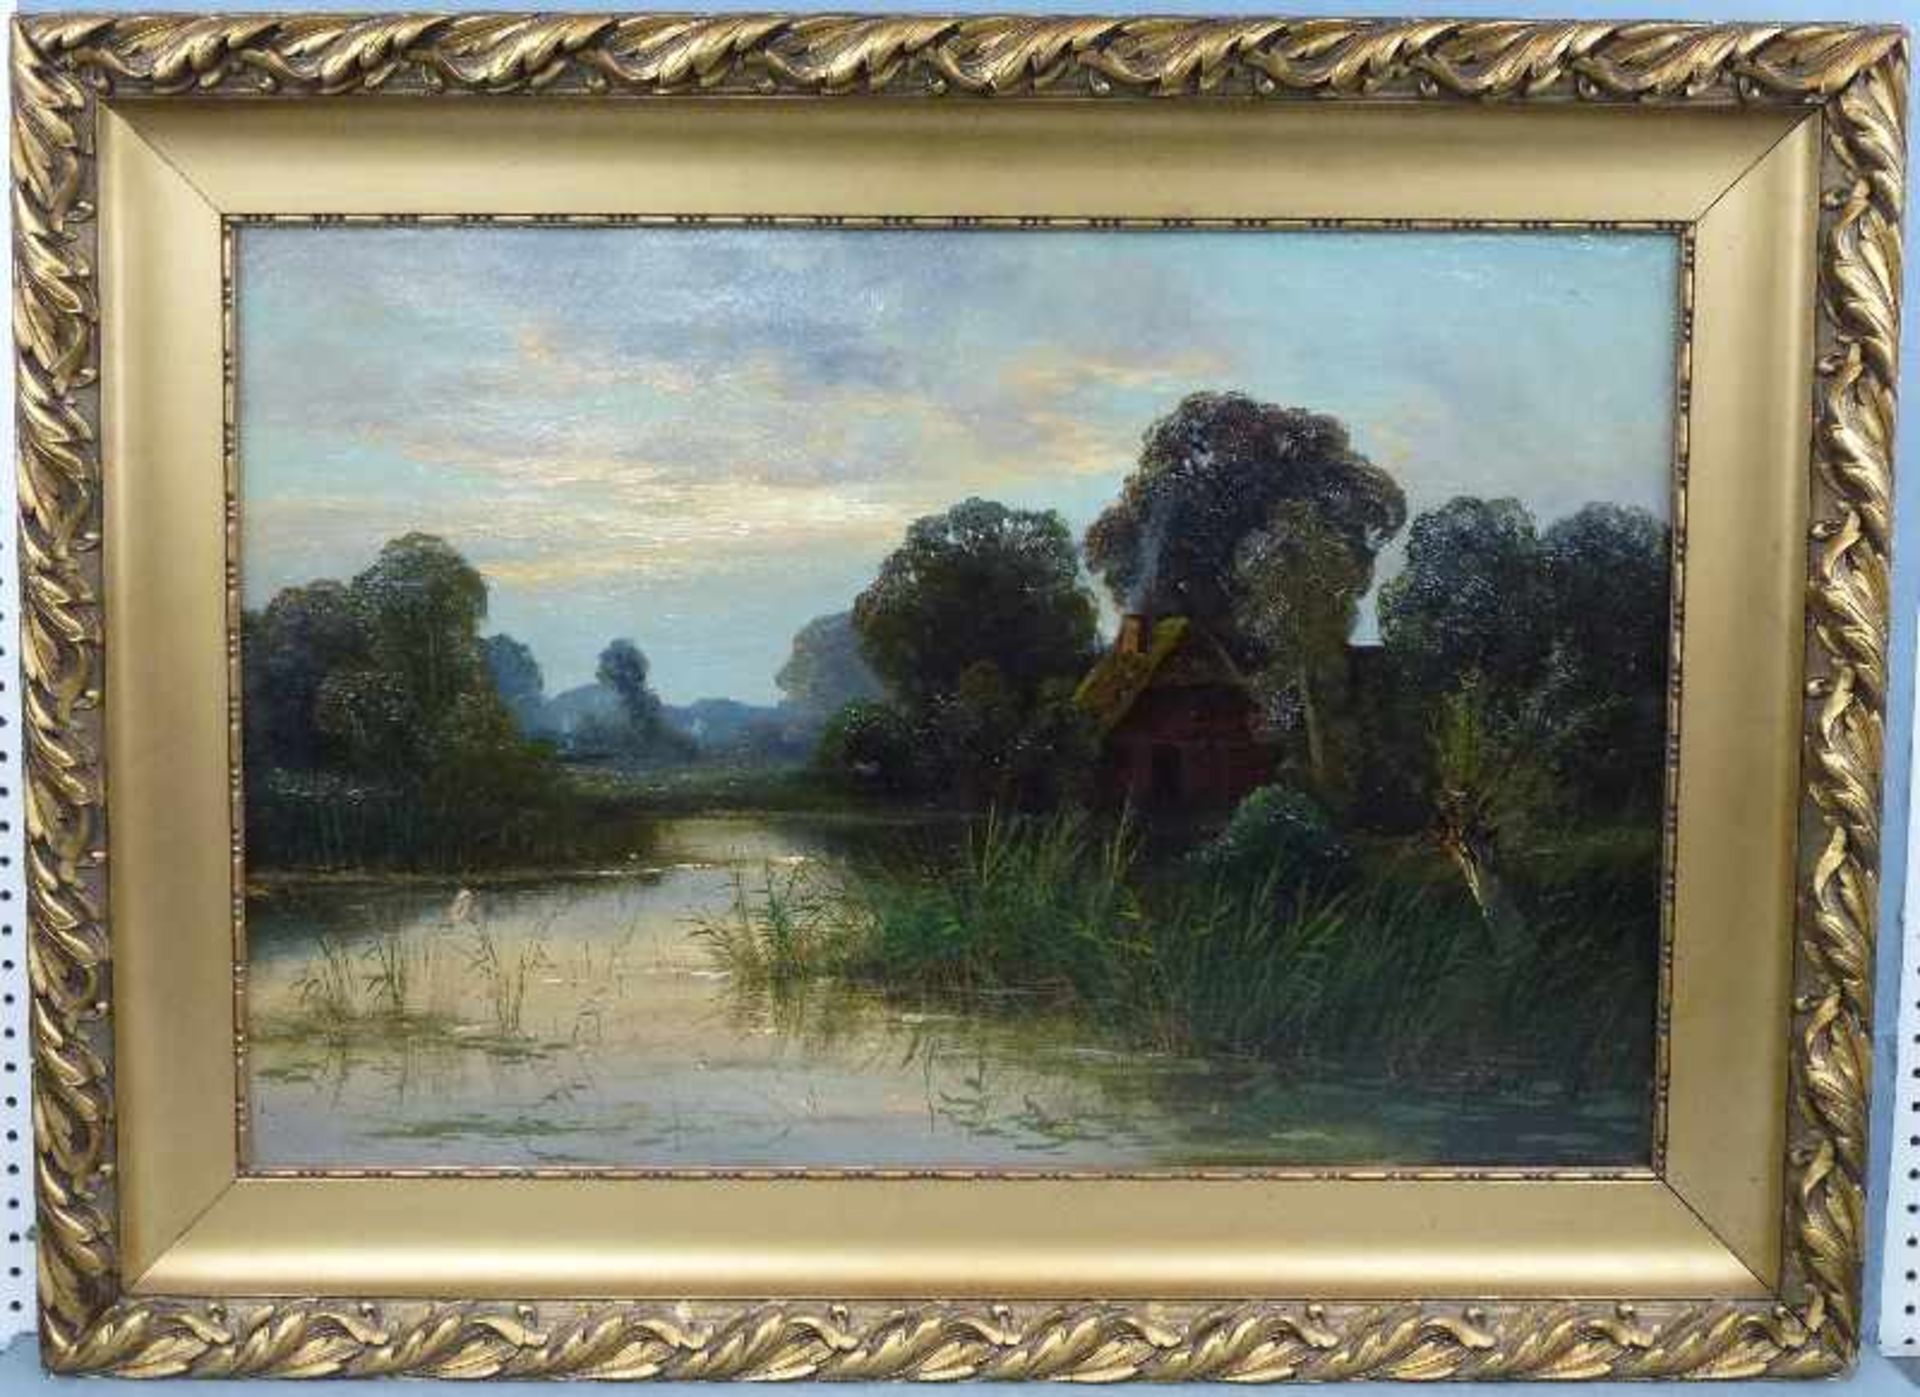 Niederrheinische Auenlandschaft, Arthur Bell (1876-1966) Öl/Lw, sign., Hof zw. Bäumen am Wasser, GR, - Bild 2 aus 3